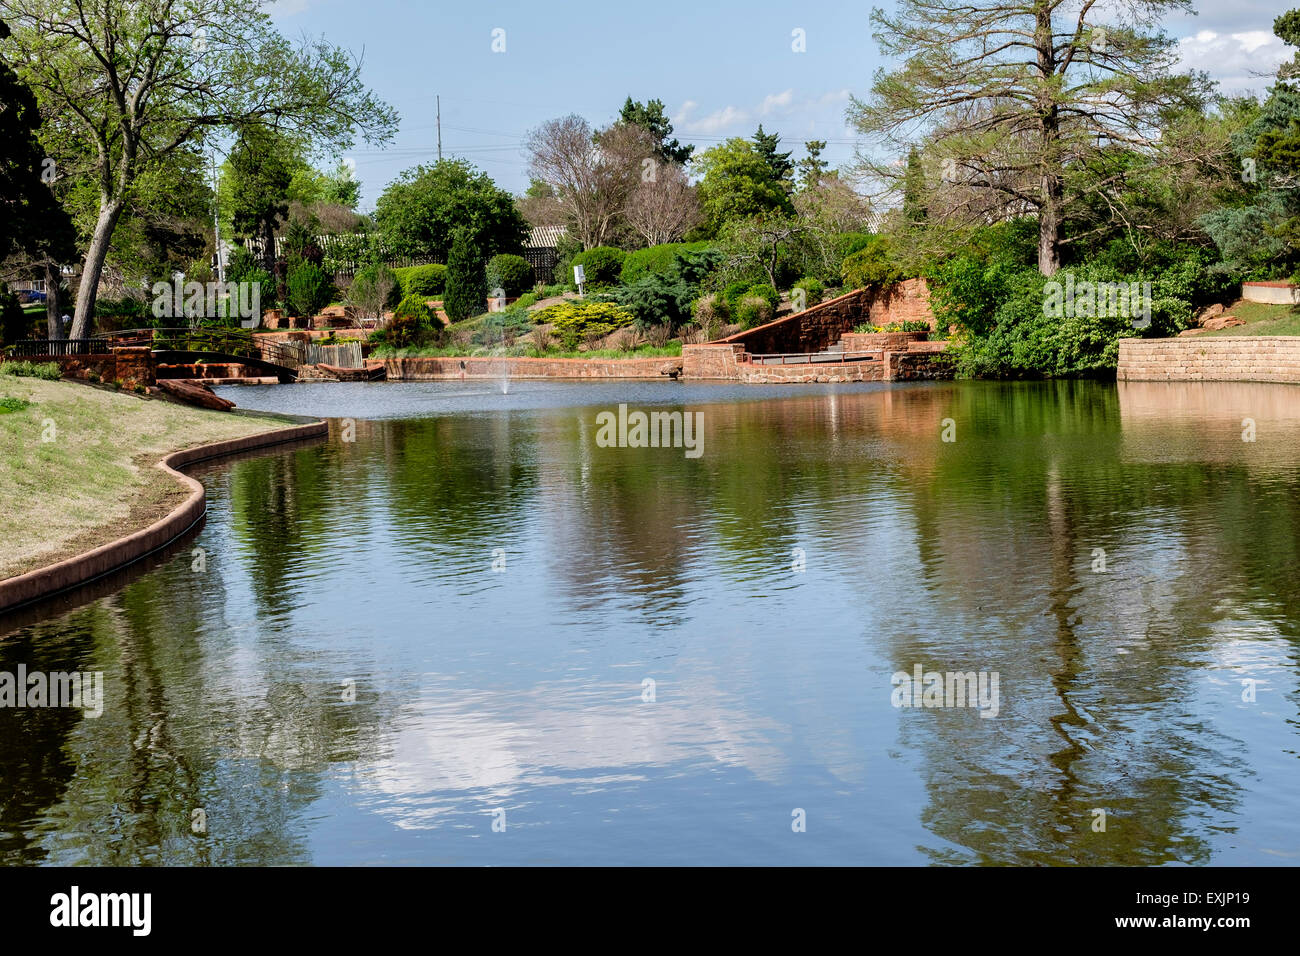 Der Teich und Landschaftsbau in Will Rogers Park in Oklahoma City, Oklahoma, USA. Stockfoto